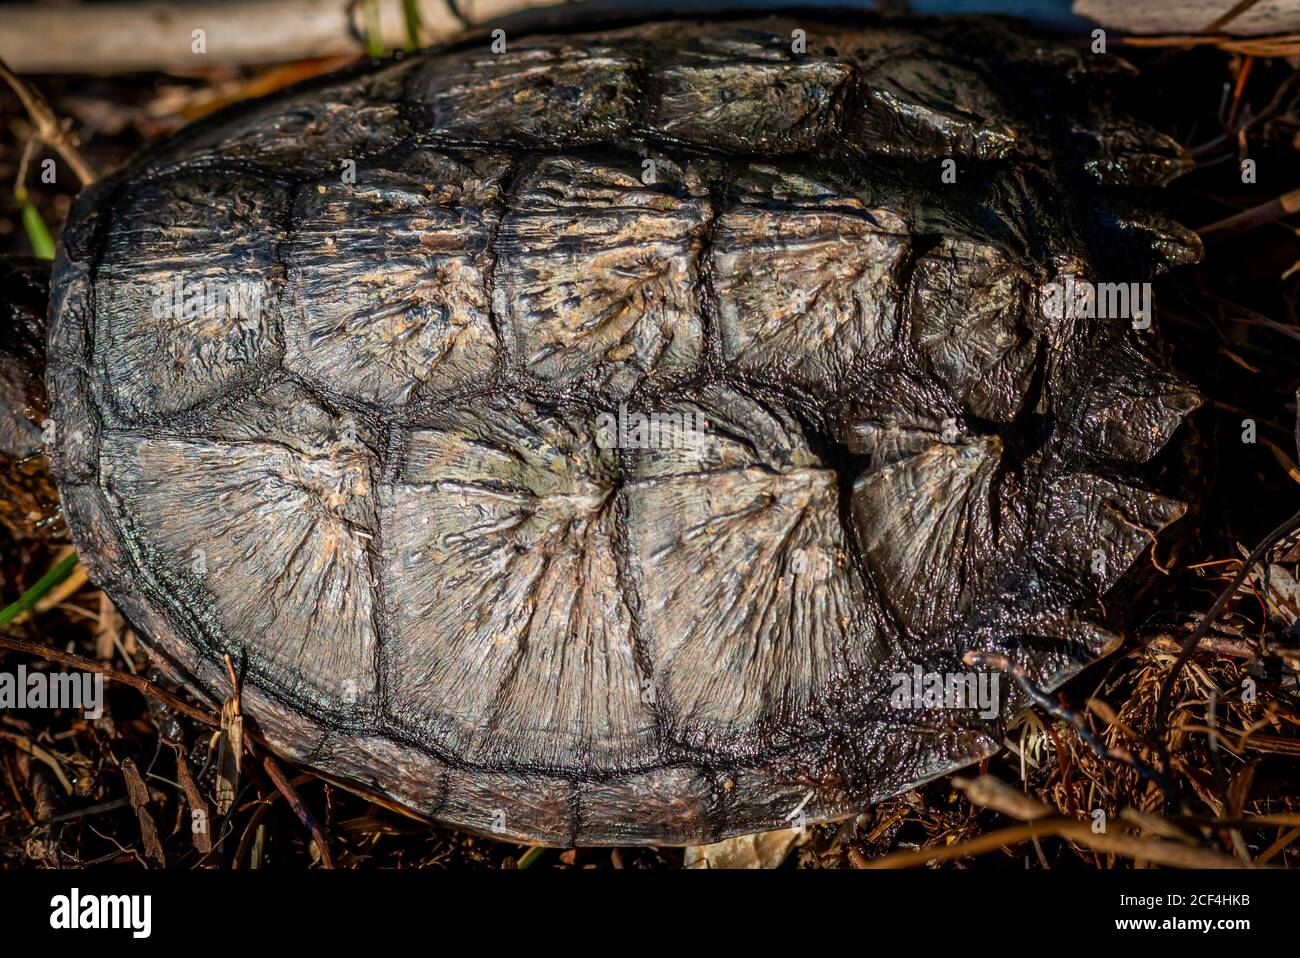 Primer plano de la concha de una joven tortuga común (Chelydra serpentina). Foto de stock